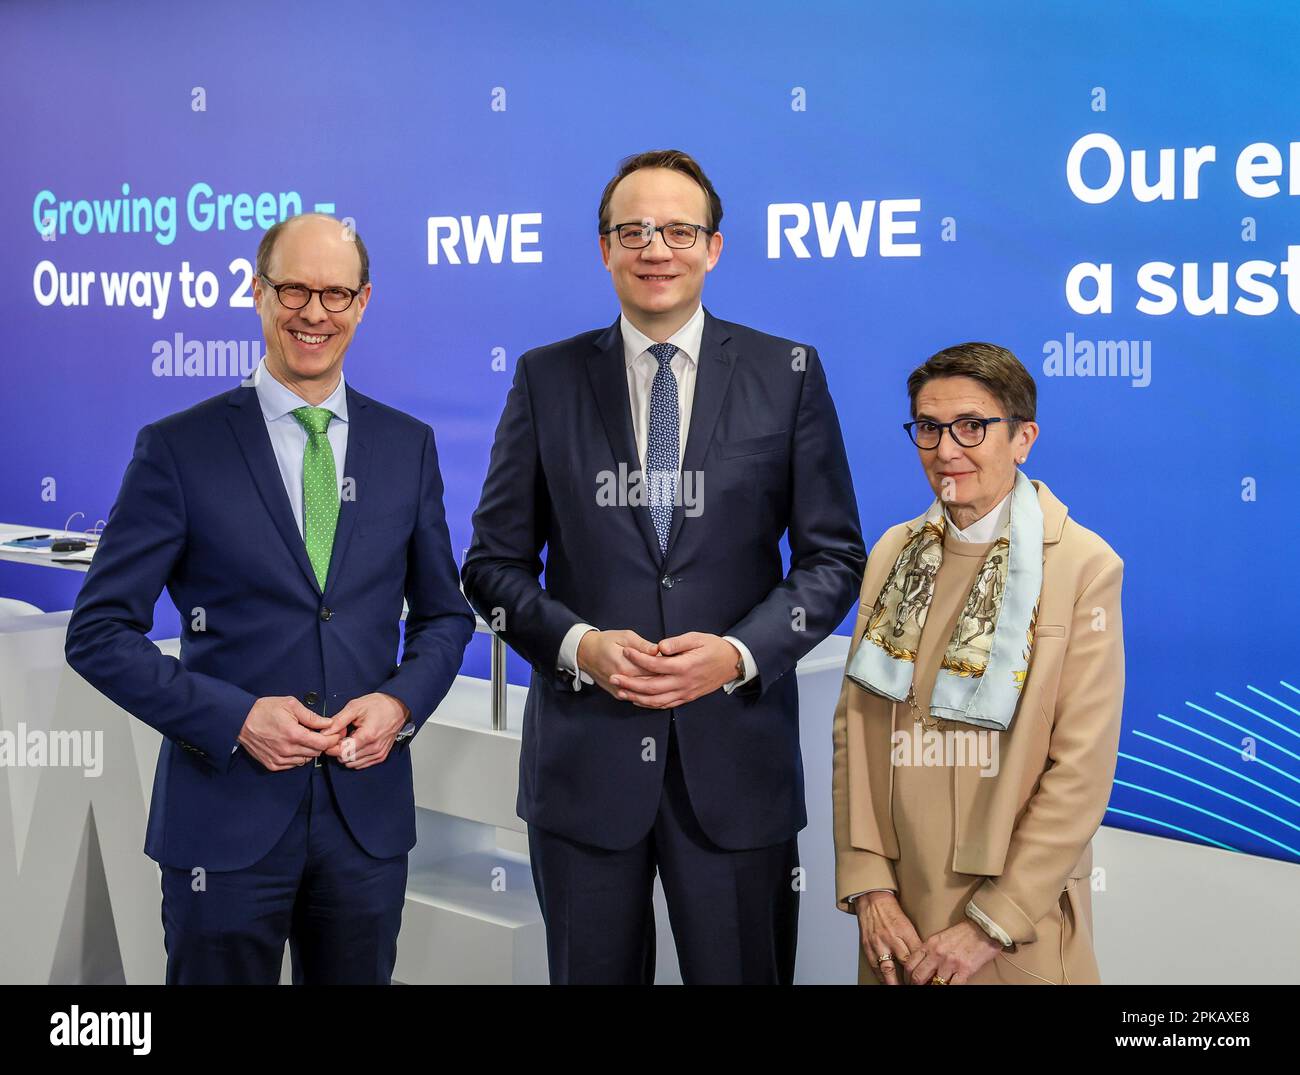 Essen, Nordrhein-Westfalen, Deutschland - RWE-CEO Markus Krebber (Zentrum), Labor Director CHO Zvezdana Seeger (rechts) und CFO Michael Mueller (links) auf der jährlichen Pressekonferenz von RWE. Stockfoto